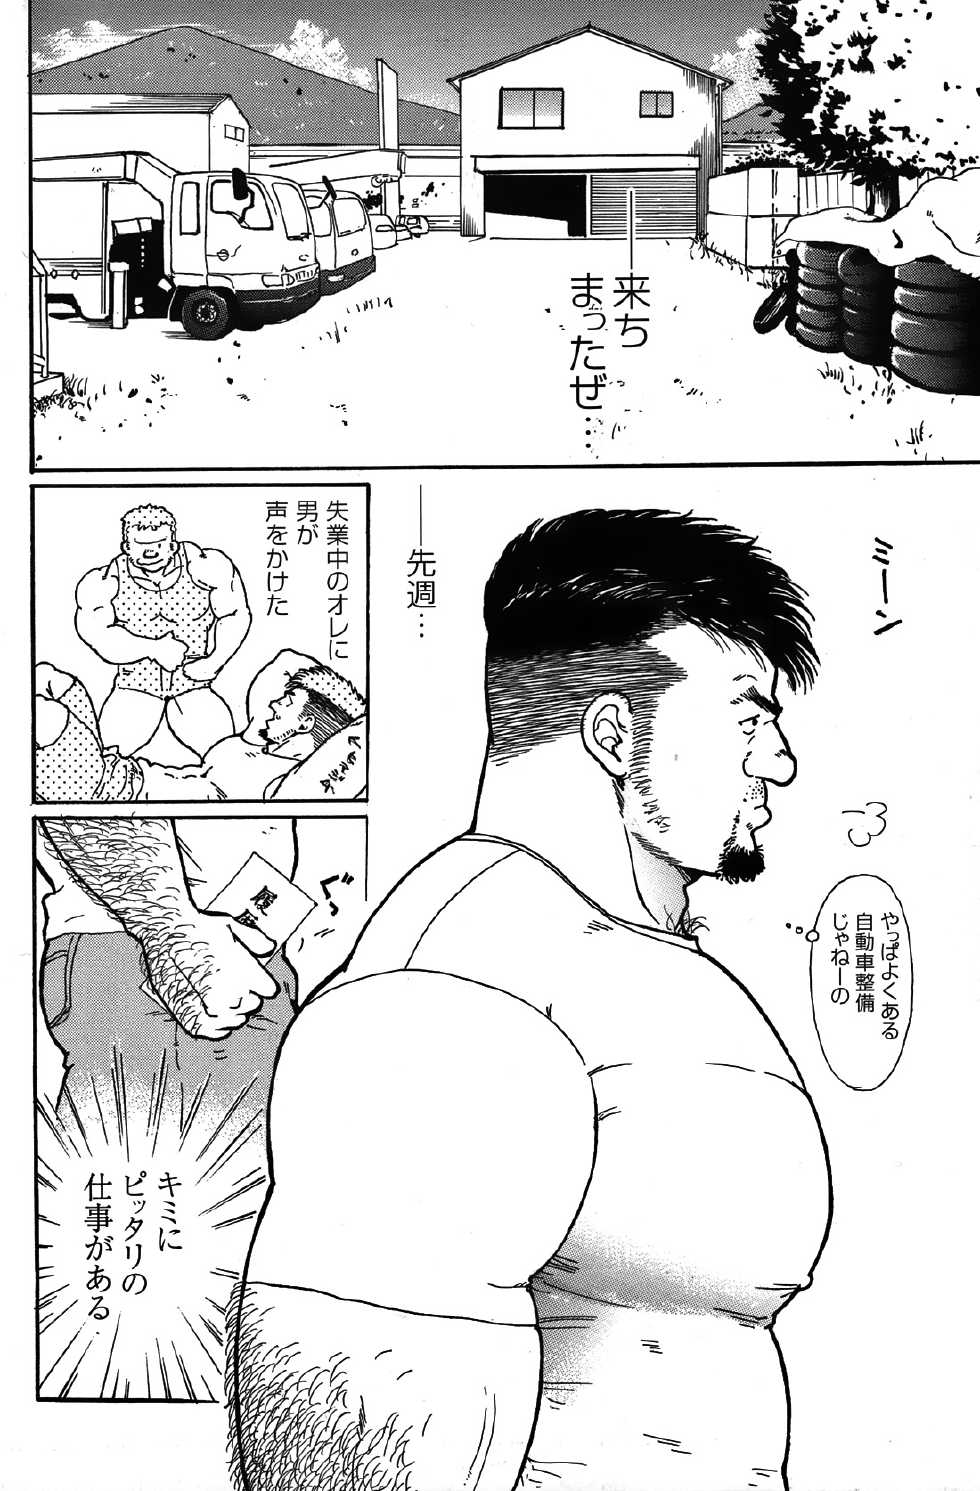 Comic G-men Gaho No.05 Rankou - Page 3